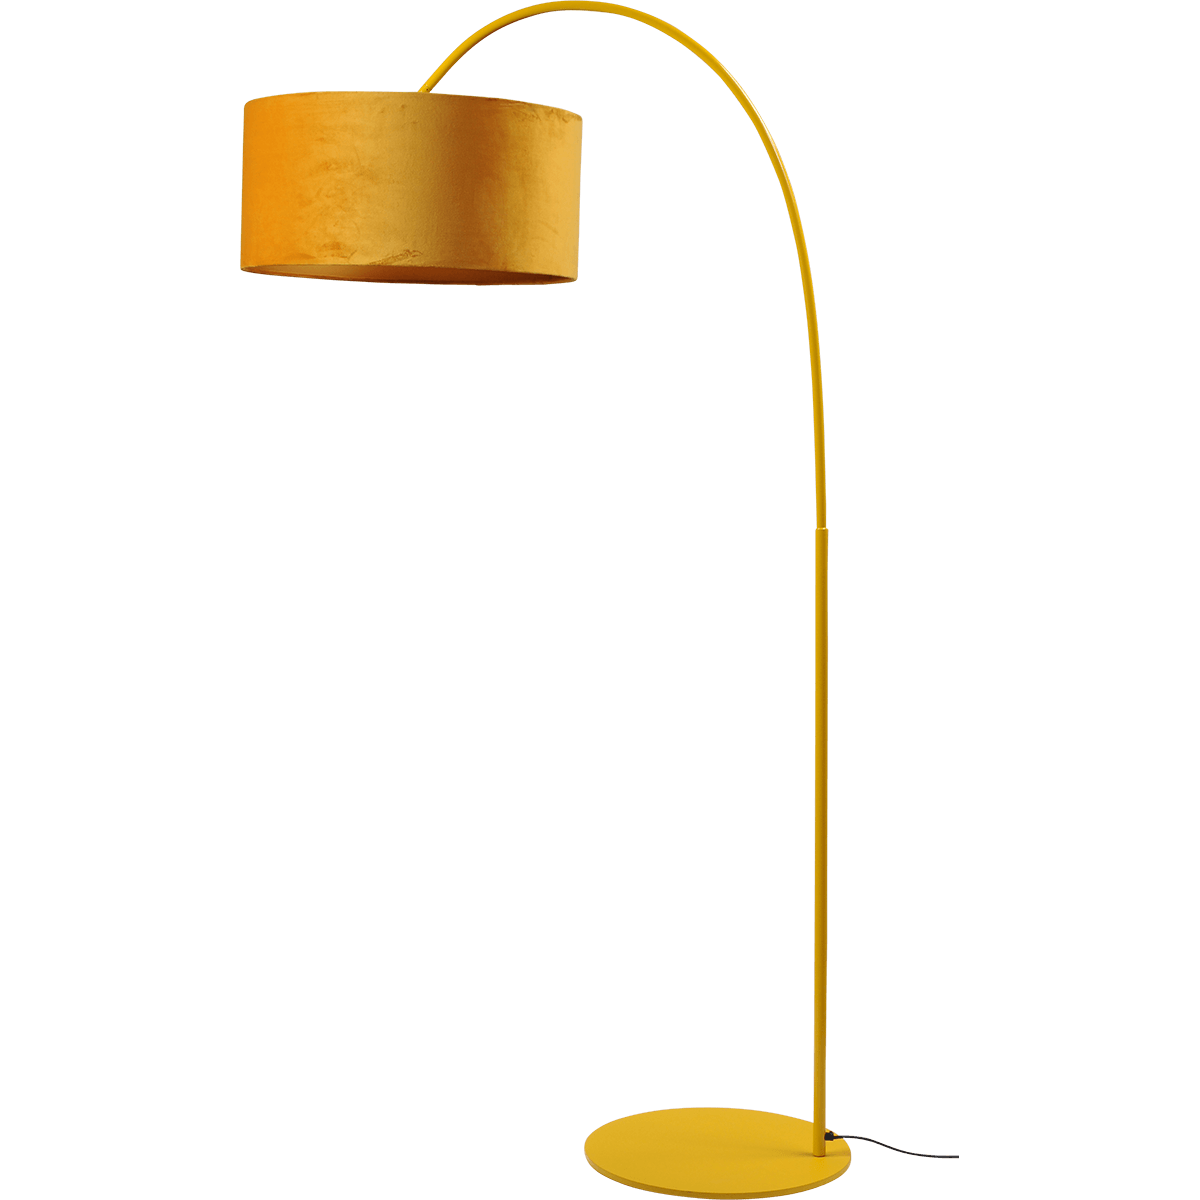 Vloerlamp Arch yellow - mat geel - hoogte 183 cm - breedte 88 cm inclusief maiskleurige lampenkap - Artik mais 52/52/25 cm - uit/aan schakelaar - MASTERLIGHT